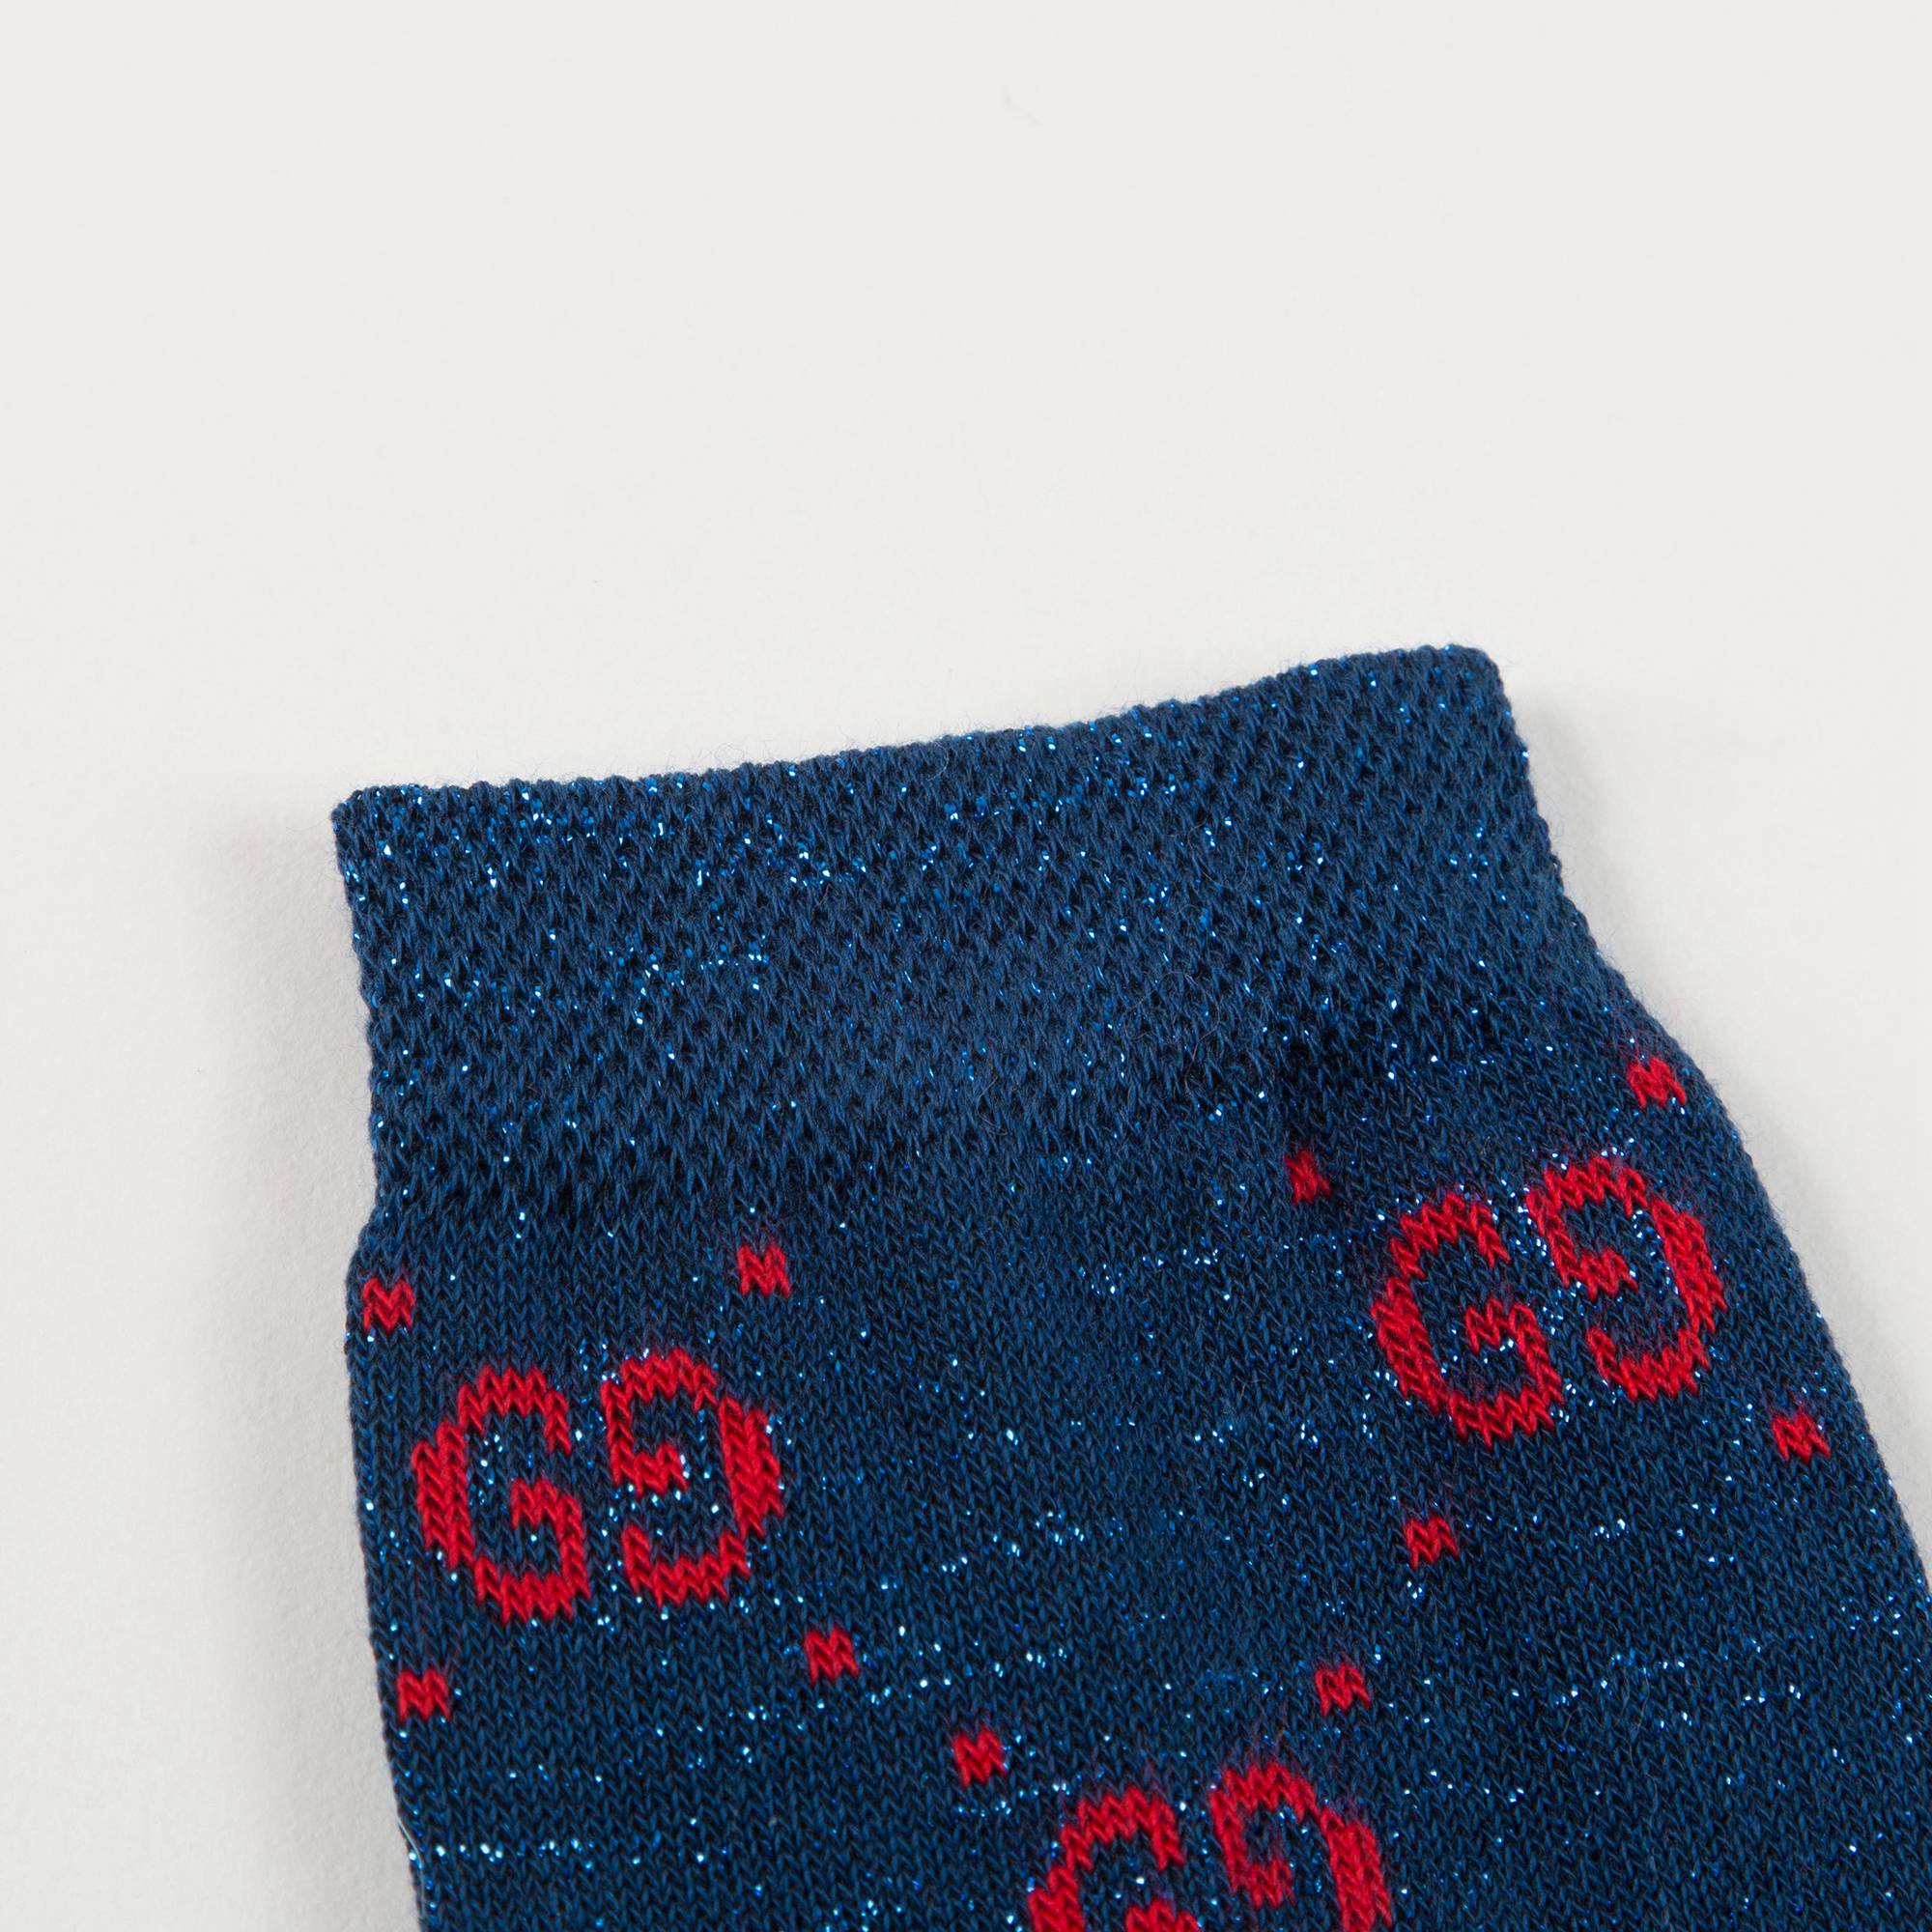 Boys & Girls  Blue  Red "GG" Socks